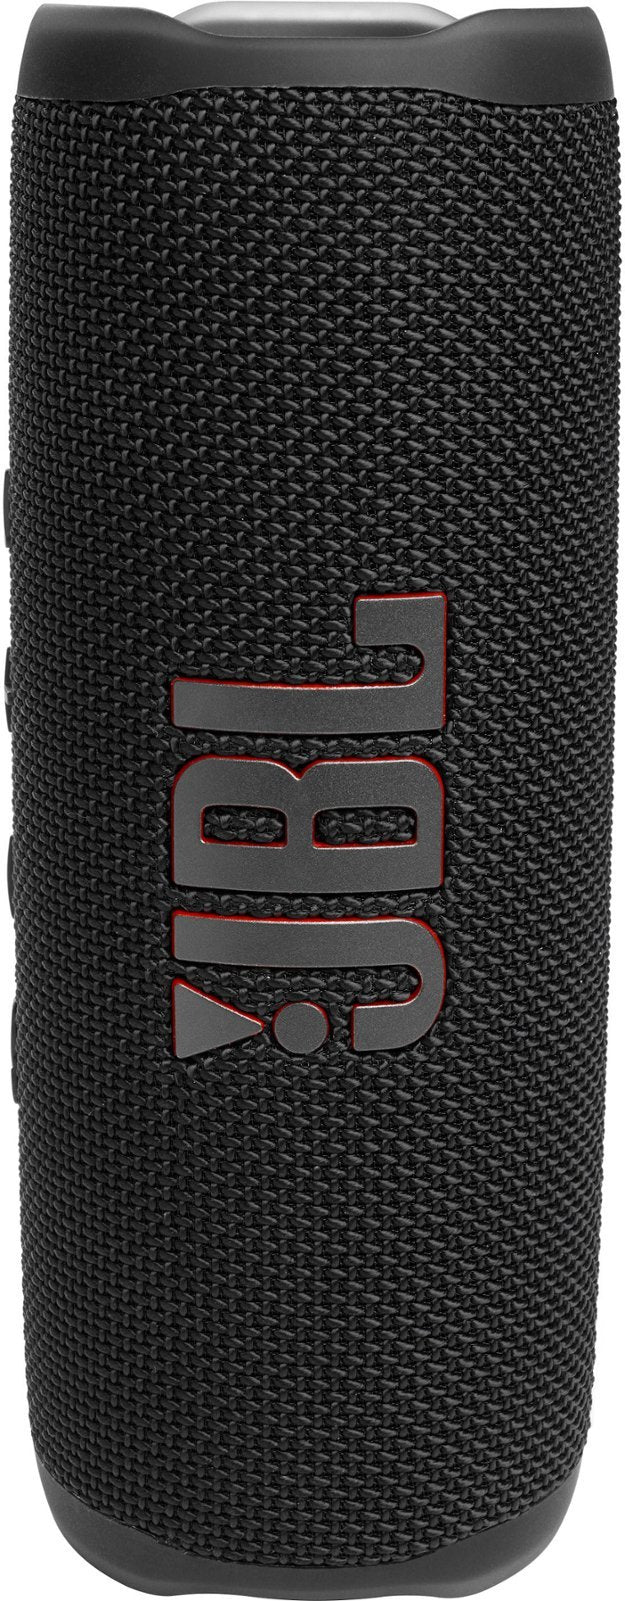 JBL FLIP 6 Portable Wireless Bluetooth Speaker IP67 Waterproof - TT - Black (New)